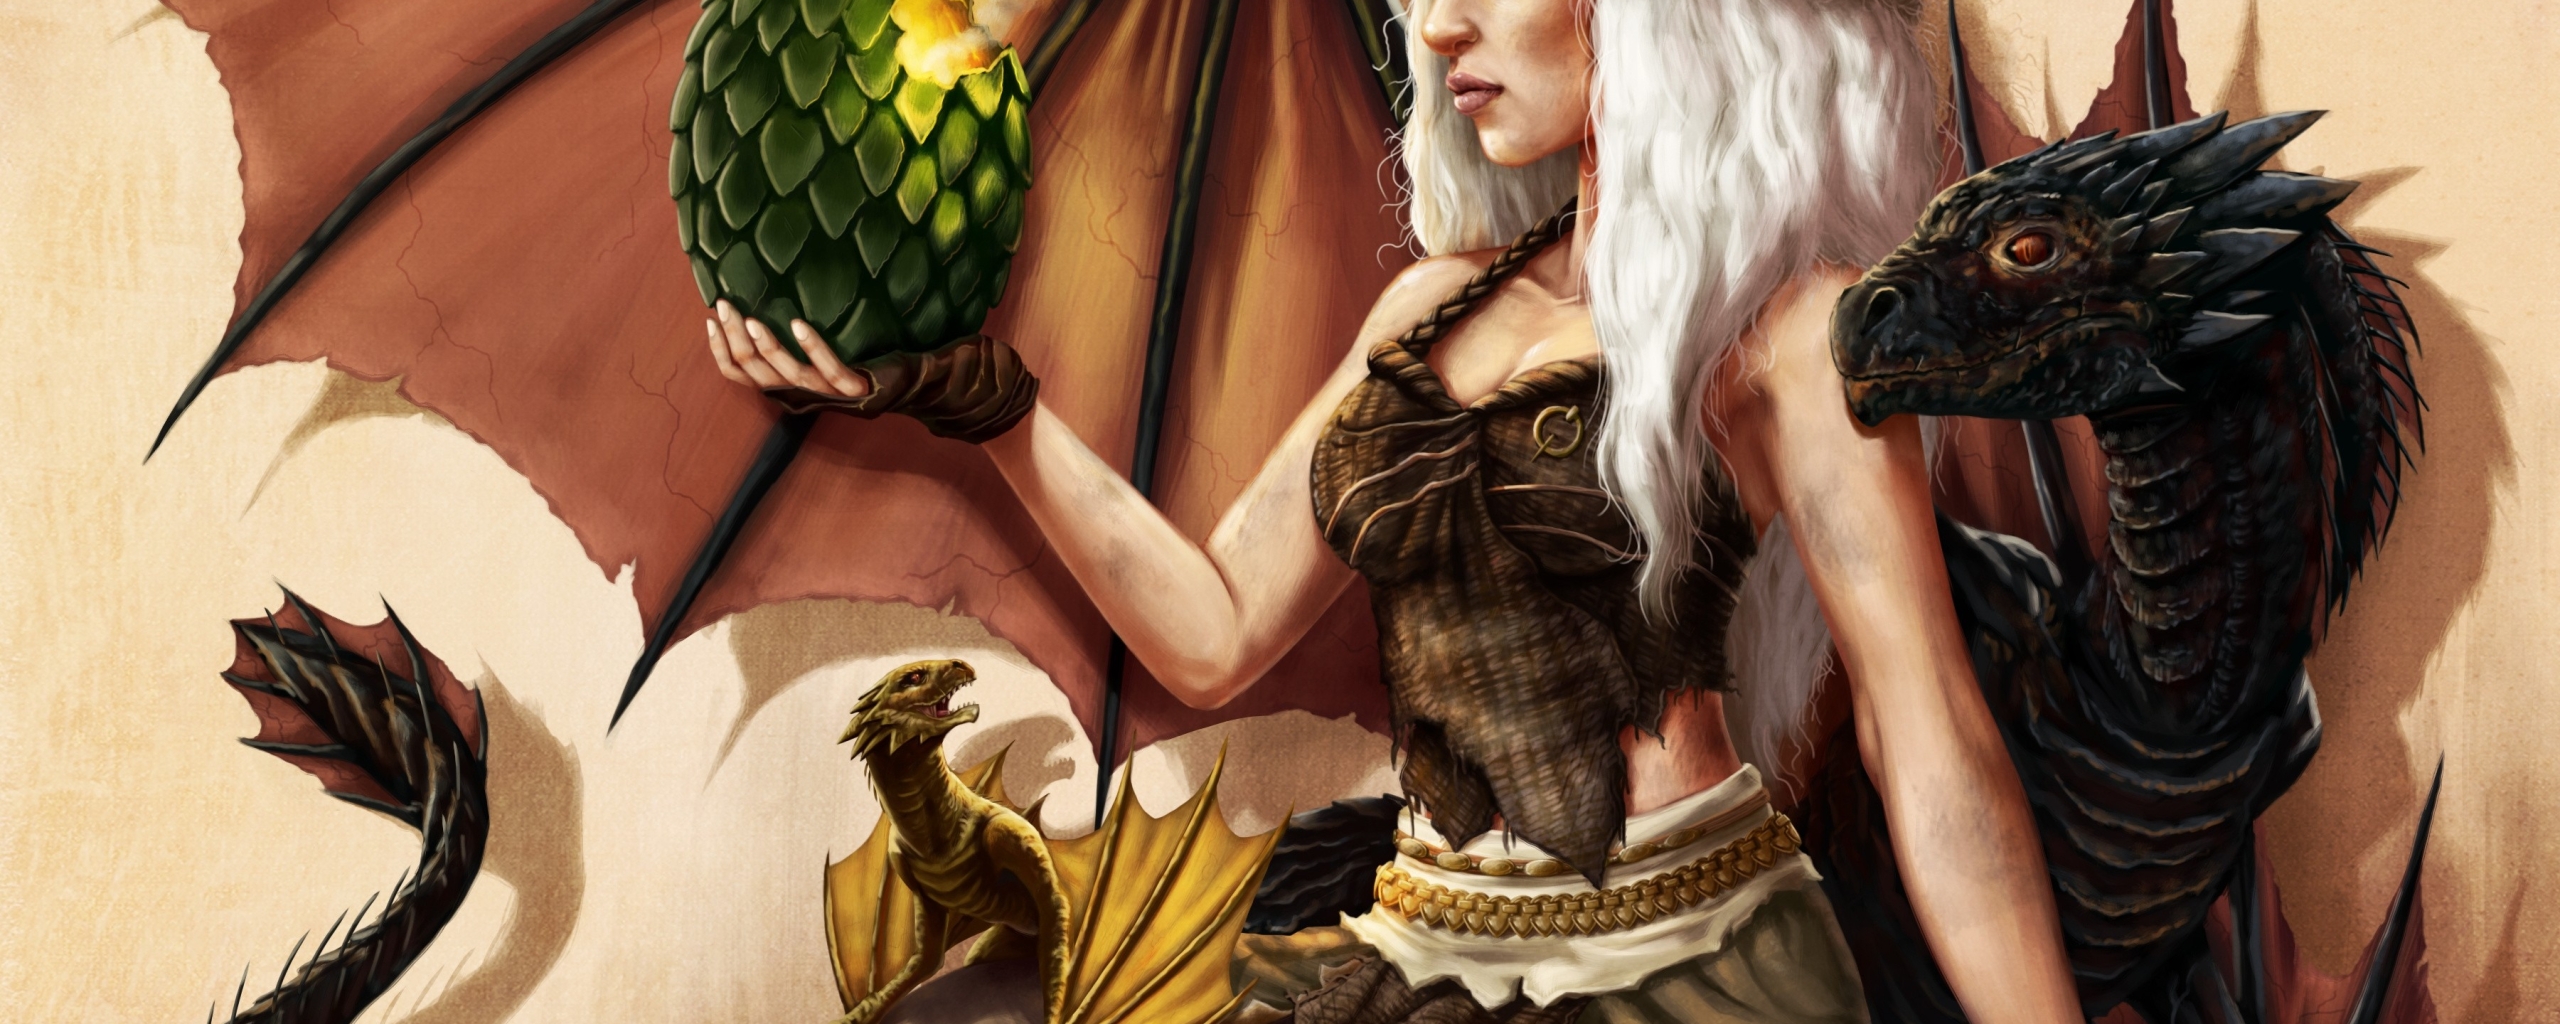 Игра пристолов daenerys targaryen драконы бесплатно